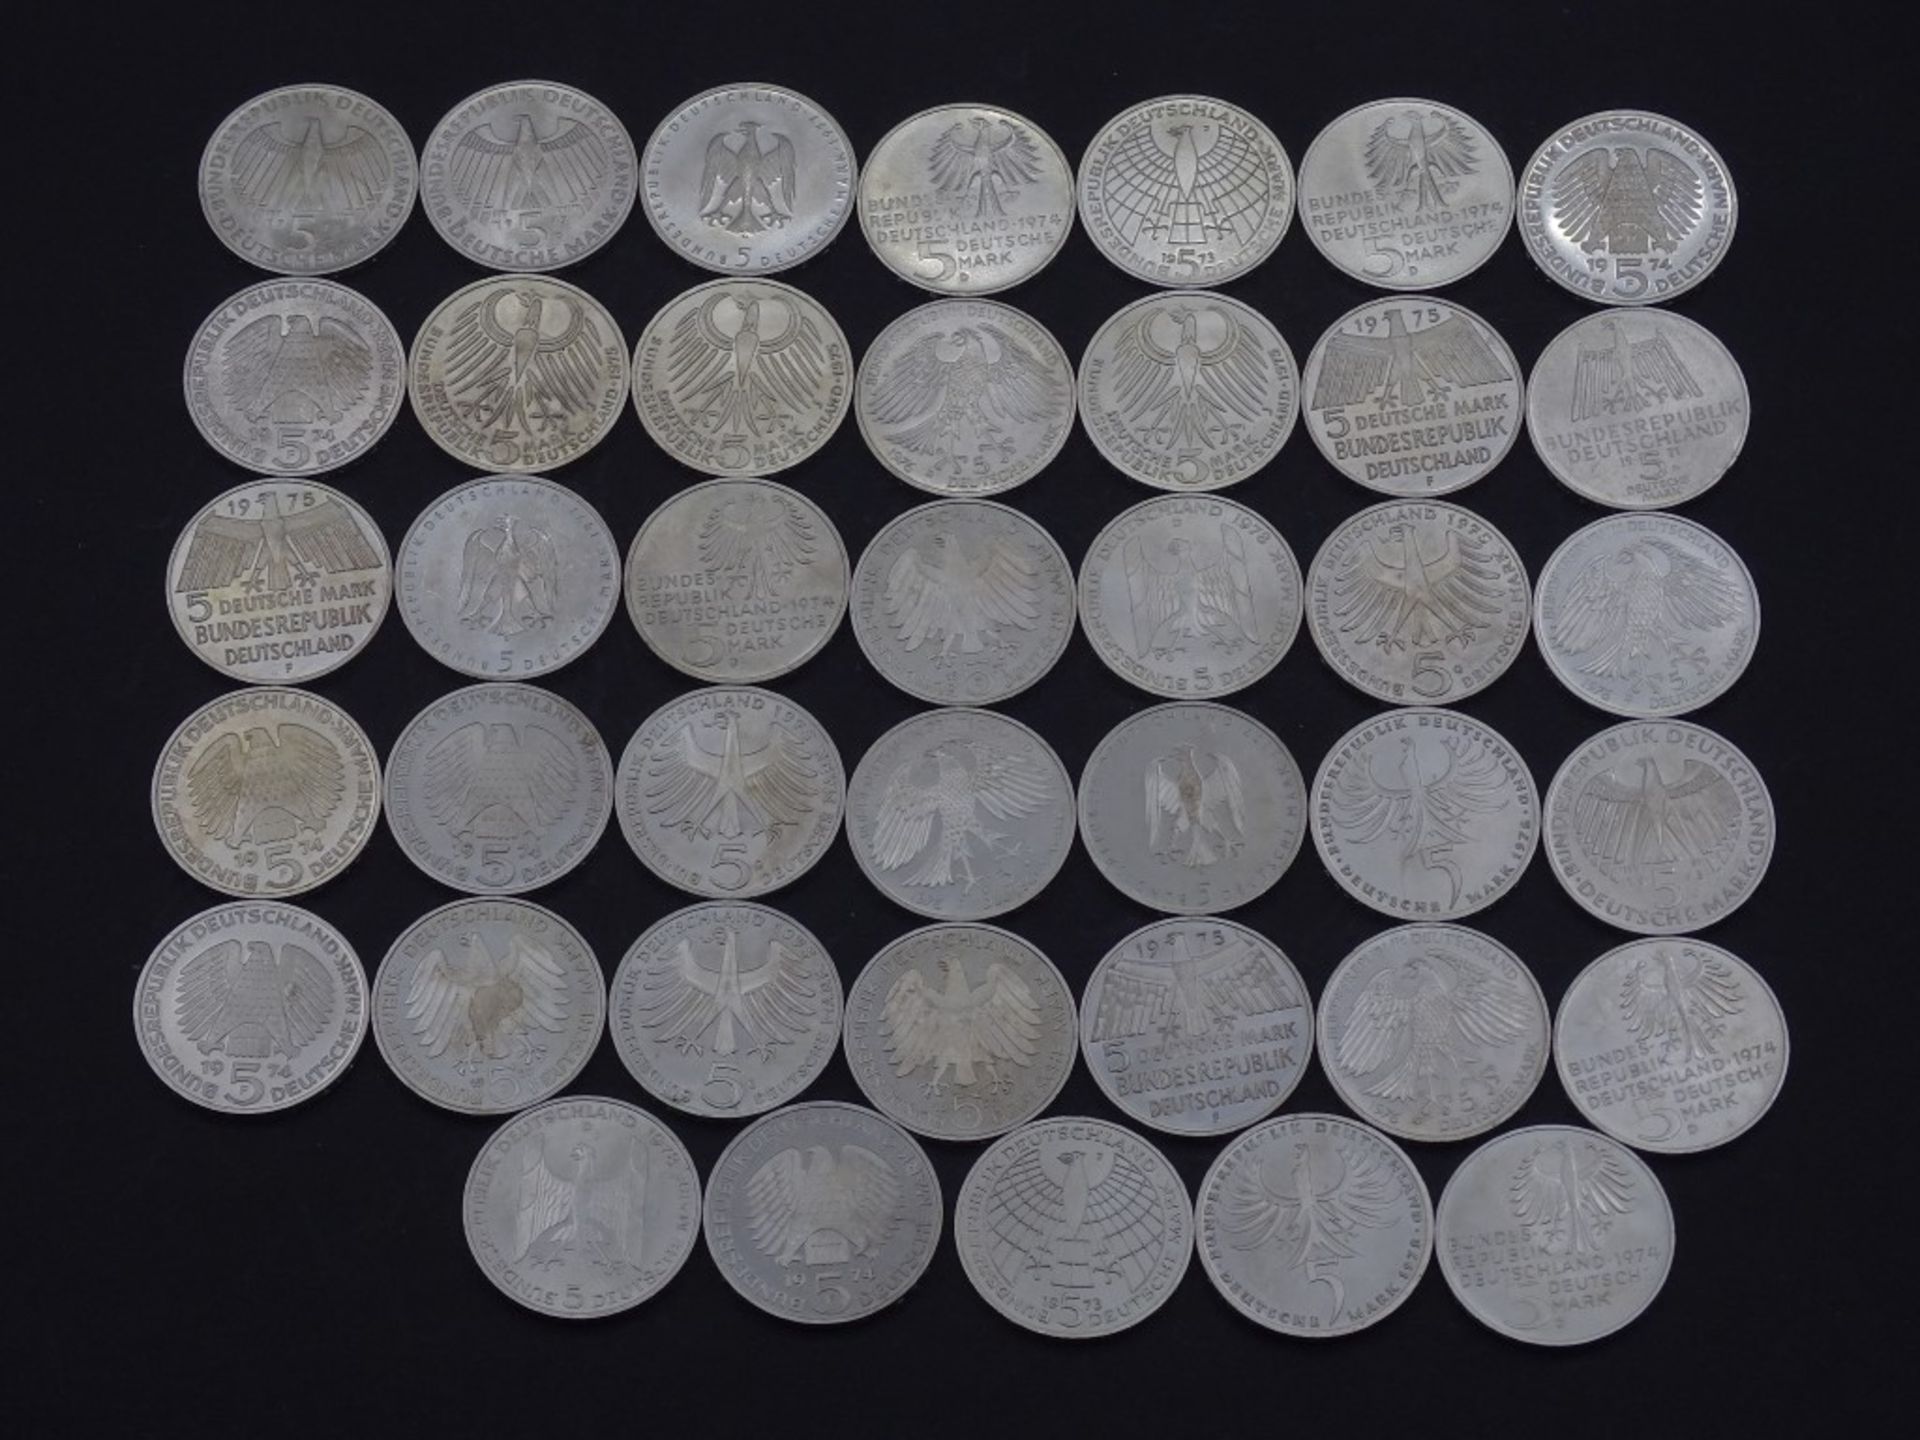 40x 5 DM Münzen,Silber,ges. 200 Deutsche Mar